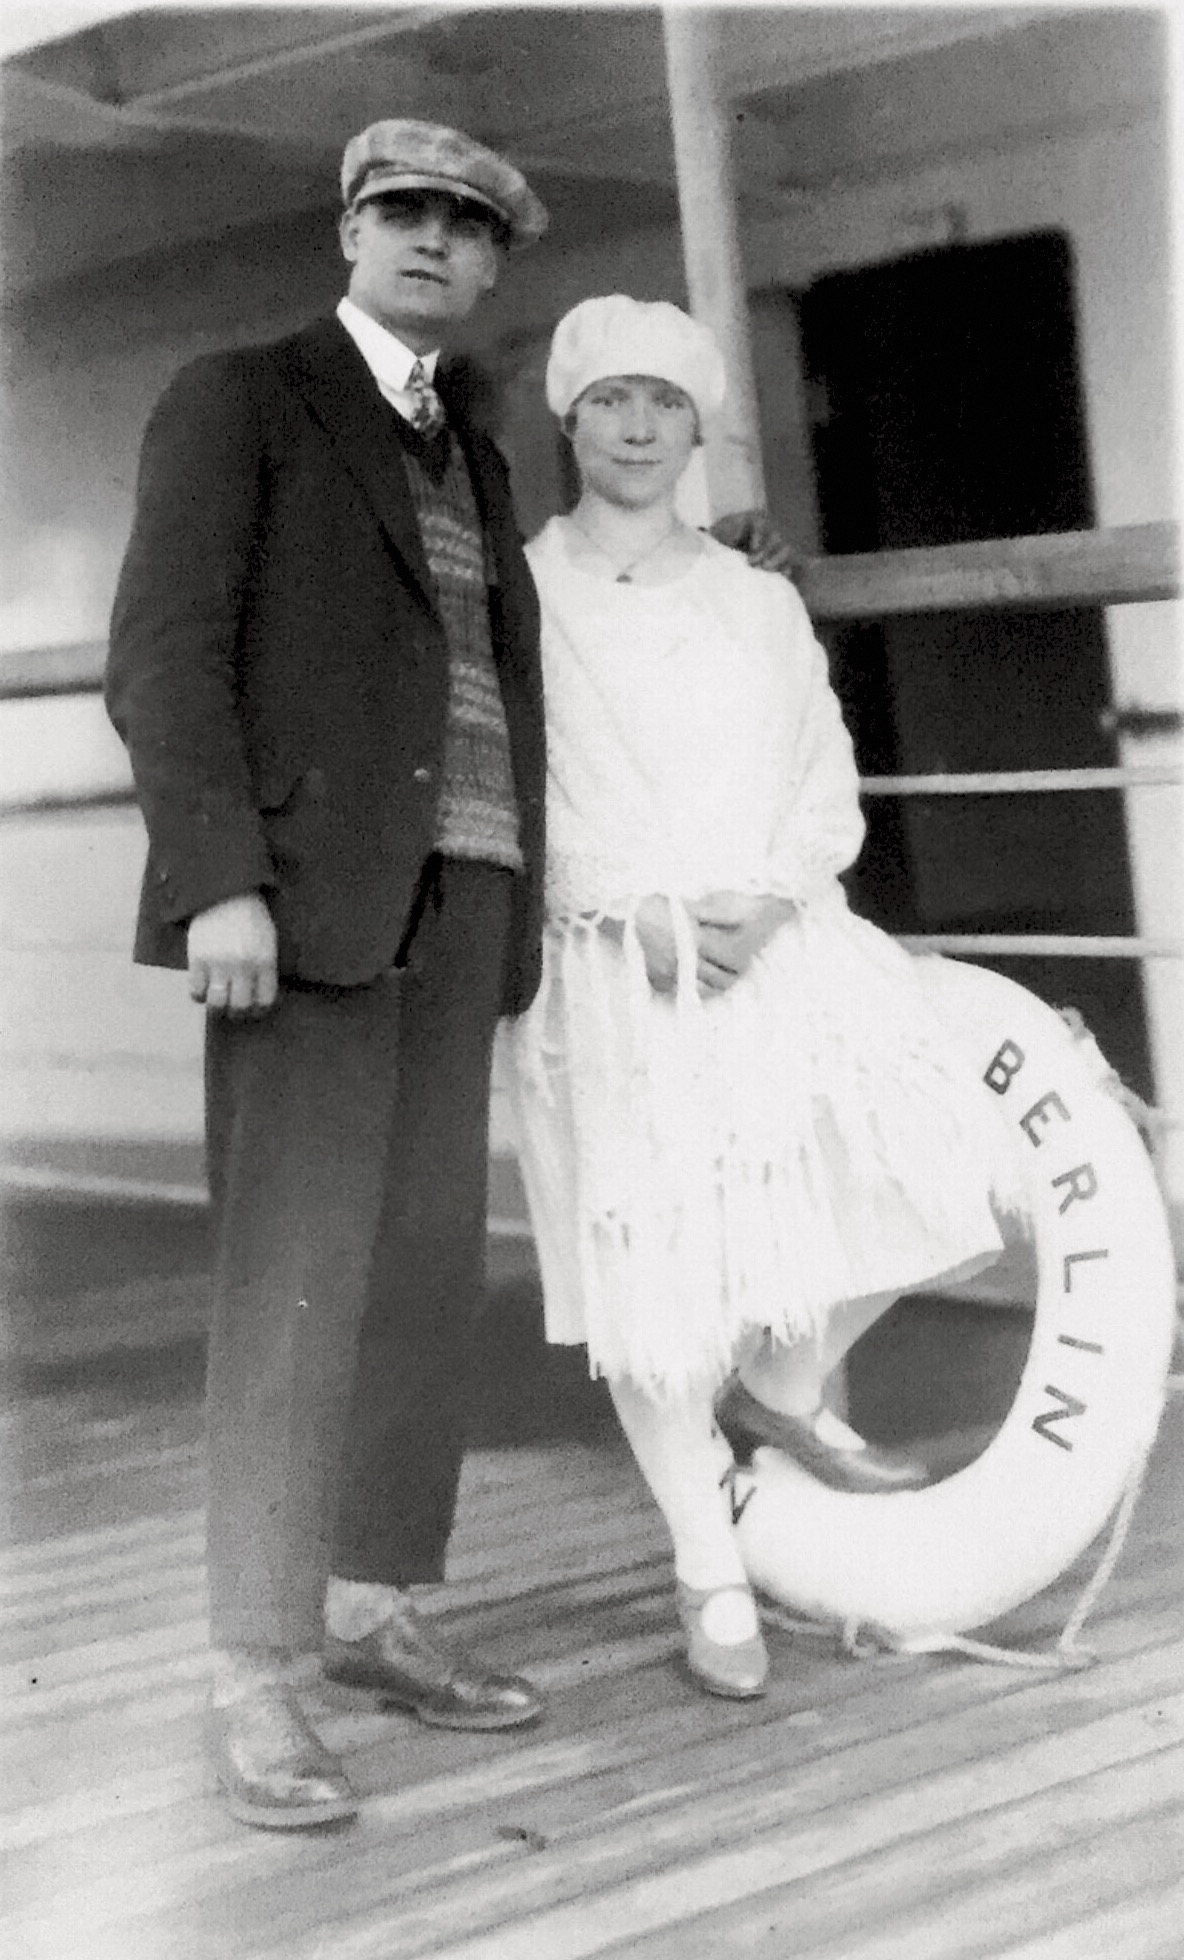 Meine Großeltern bei ihrer Immigration im Sommer 1927 auf dem Weg nach New York/USA.